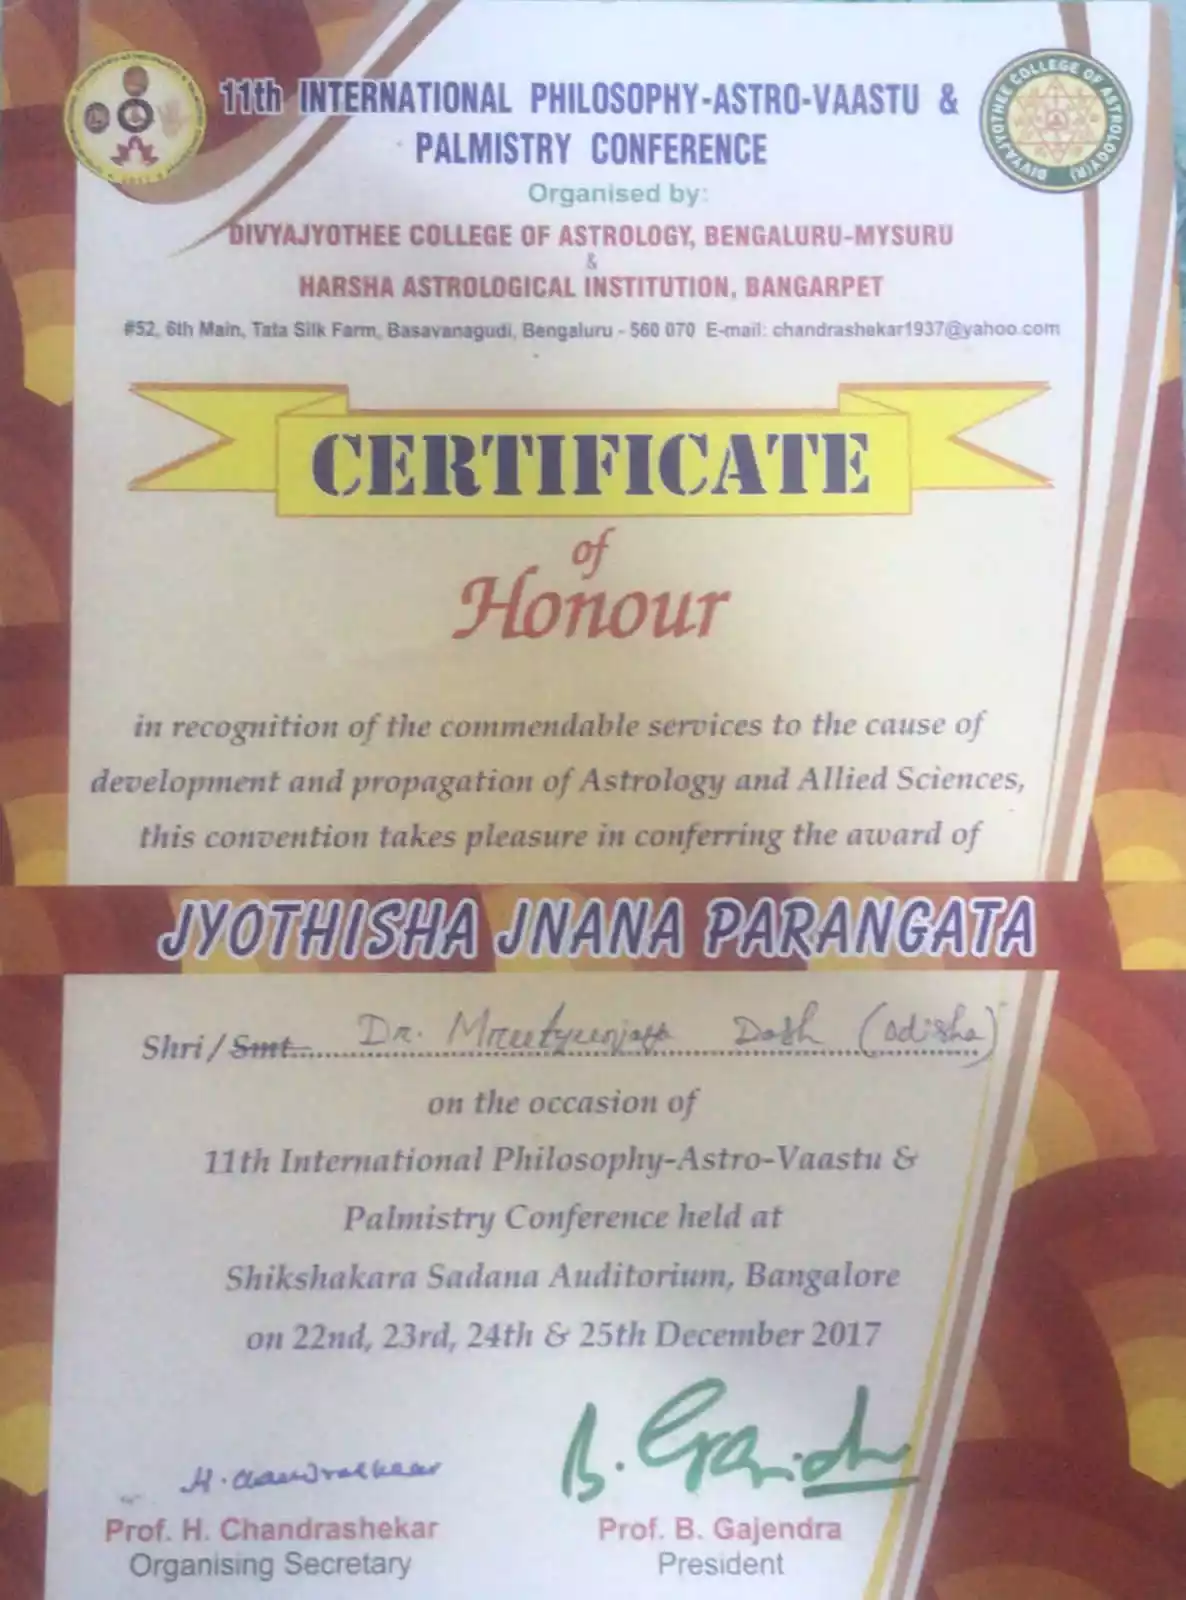  Certificate of Honour